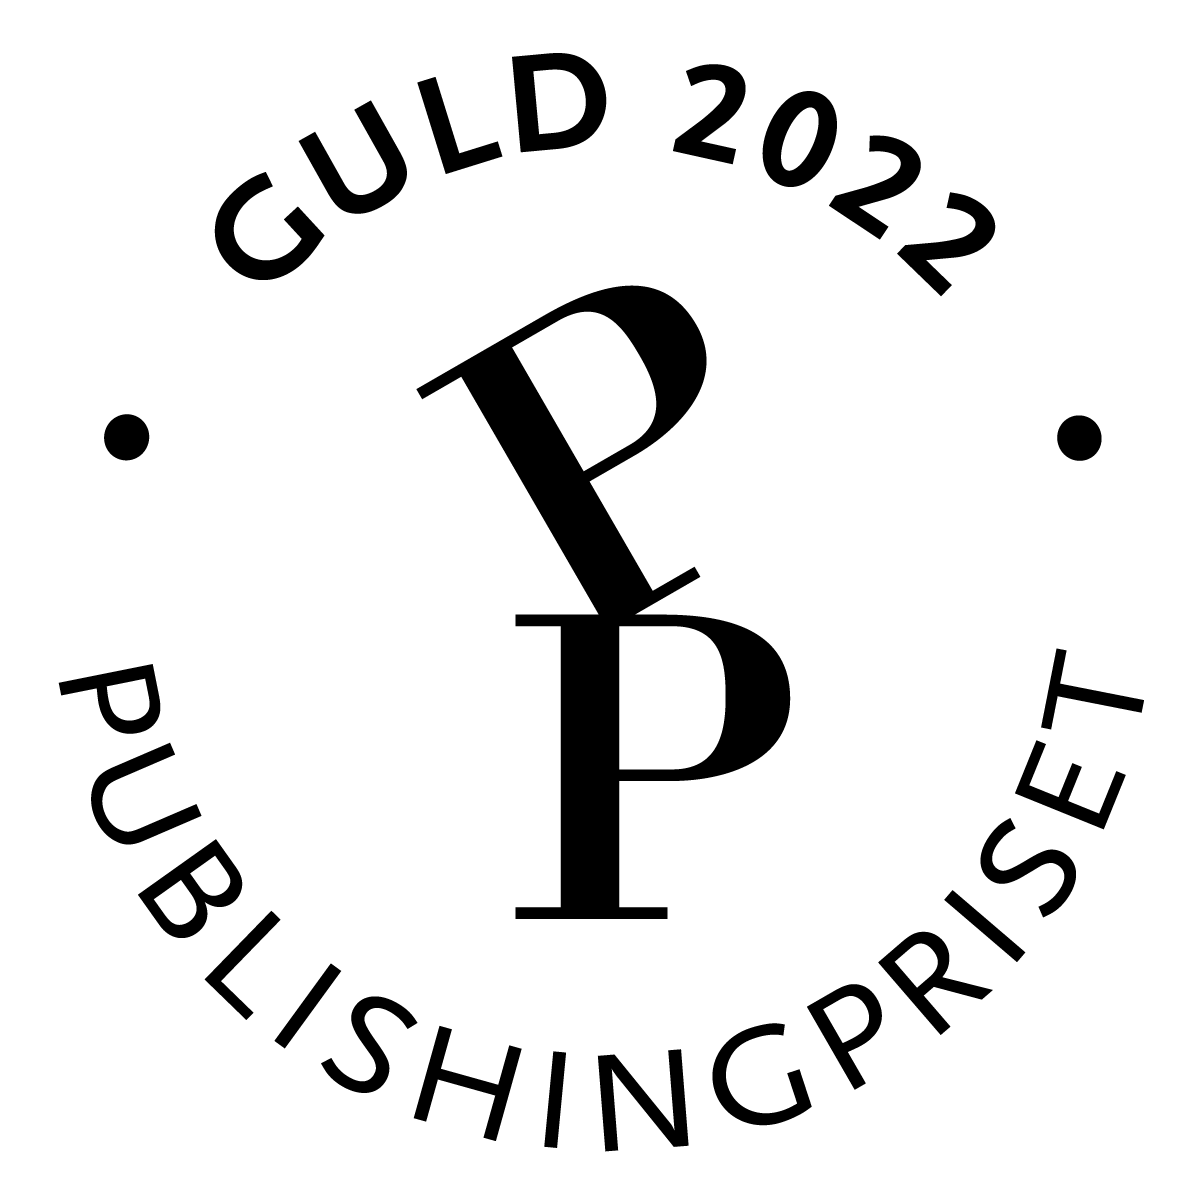 Compitiendo en el Premio Editorial 2022